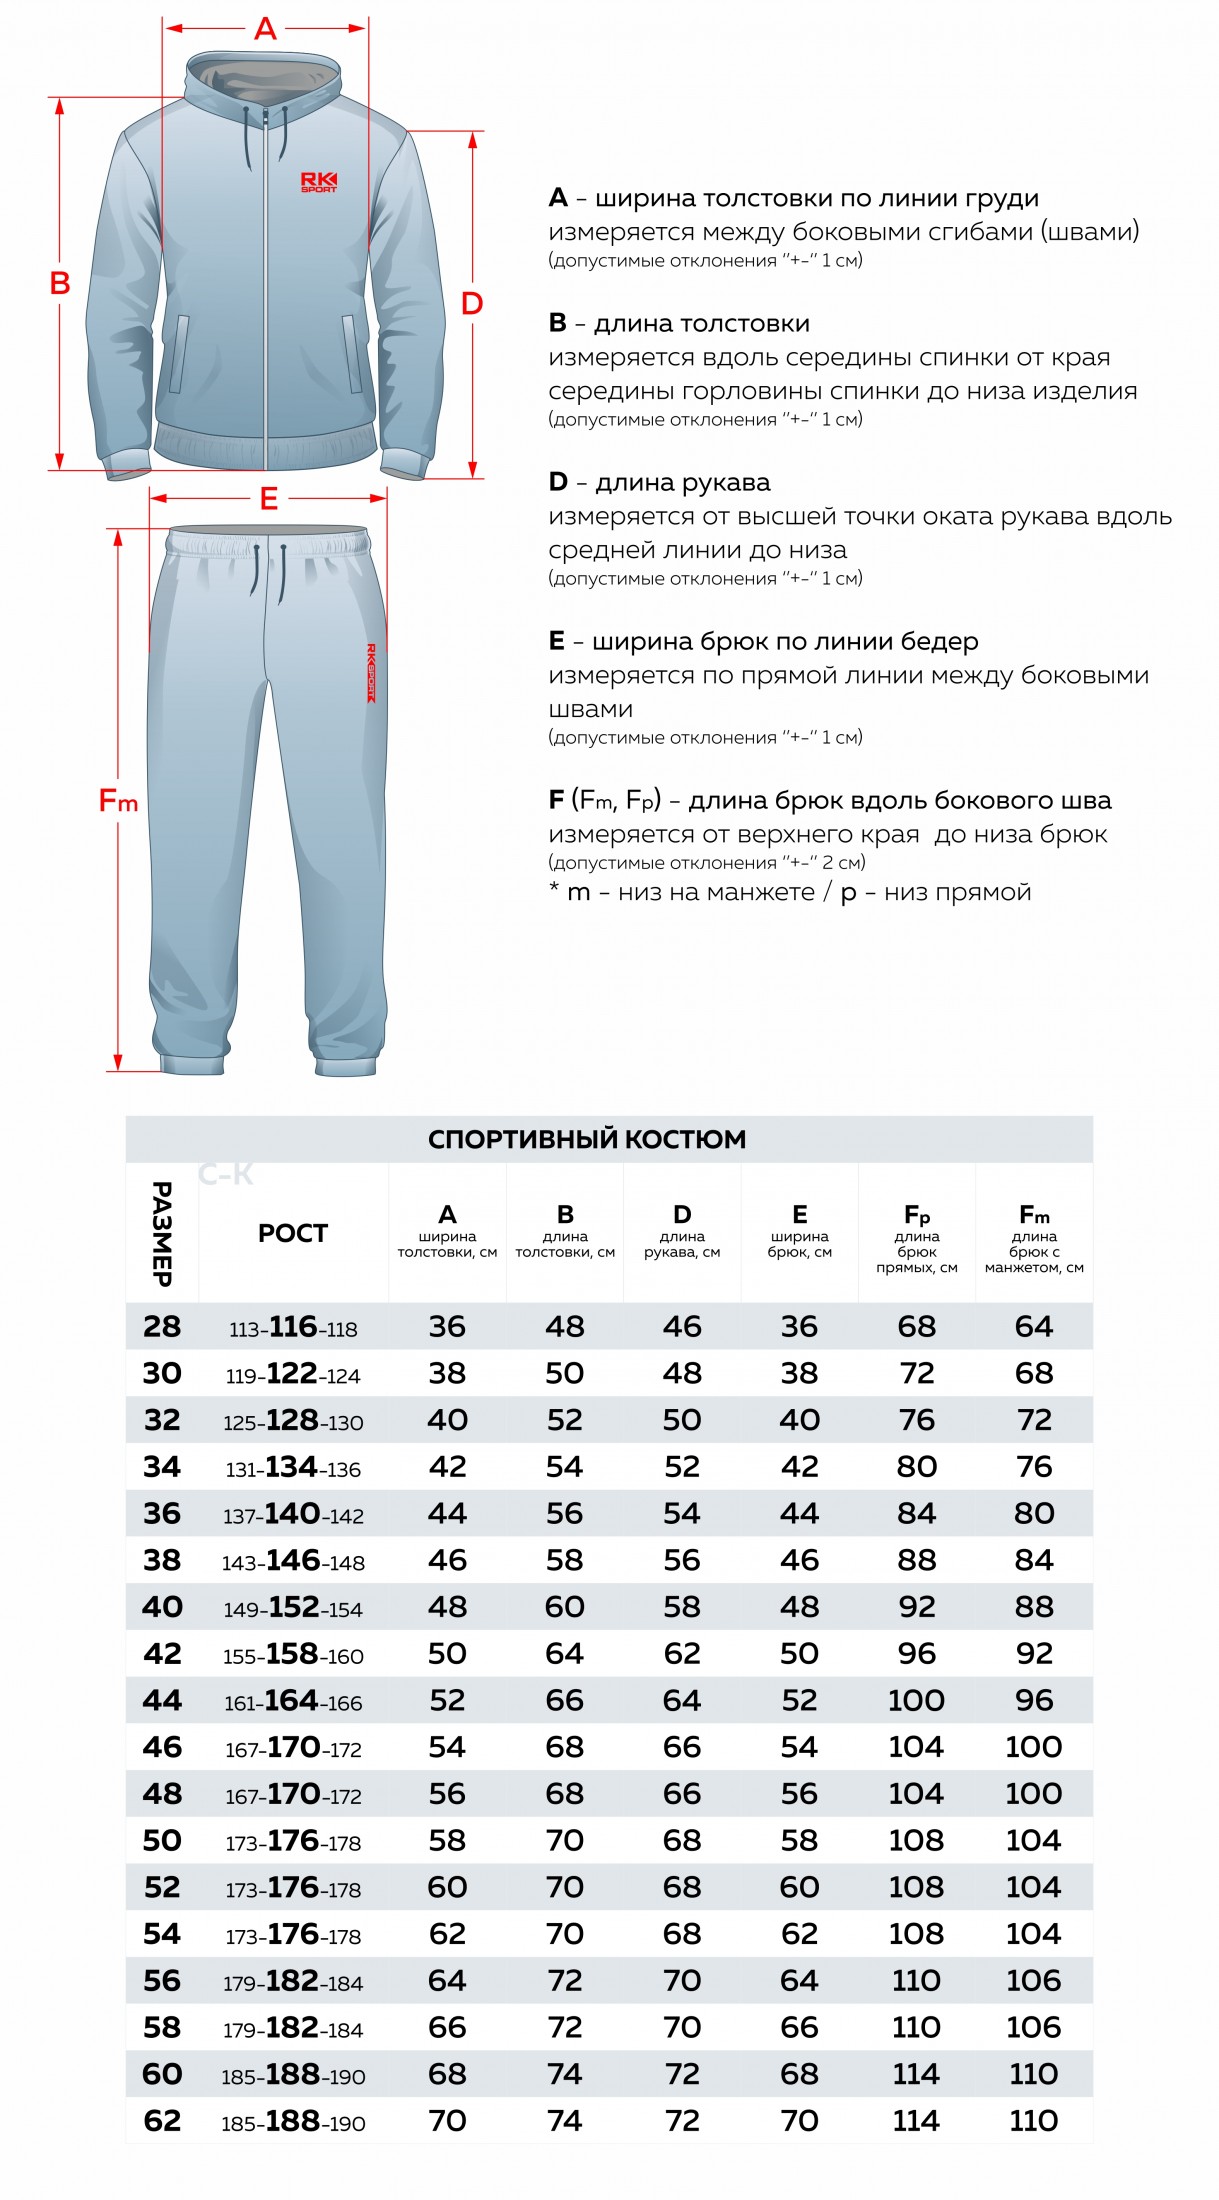 Таблица спортивных костюмов. Размер 56 мужской спортивный костюм параметры. Размерная сетка мужских спортивных штанов. Размерная сетка спортивных костюмов Joma. Размерная таблица мужской спортивки.